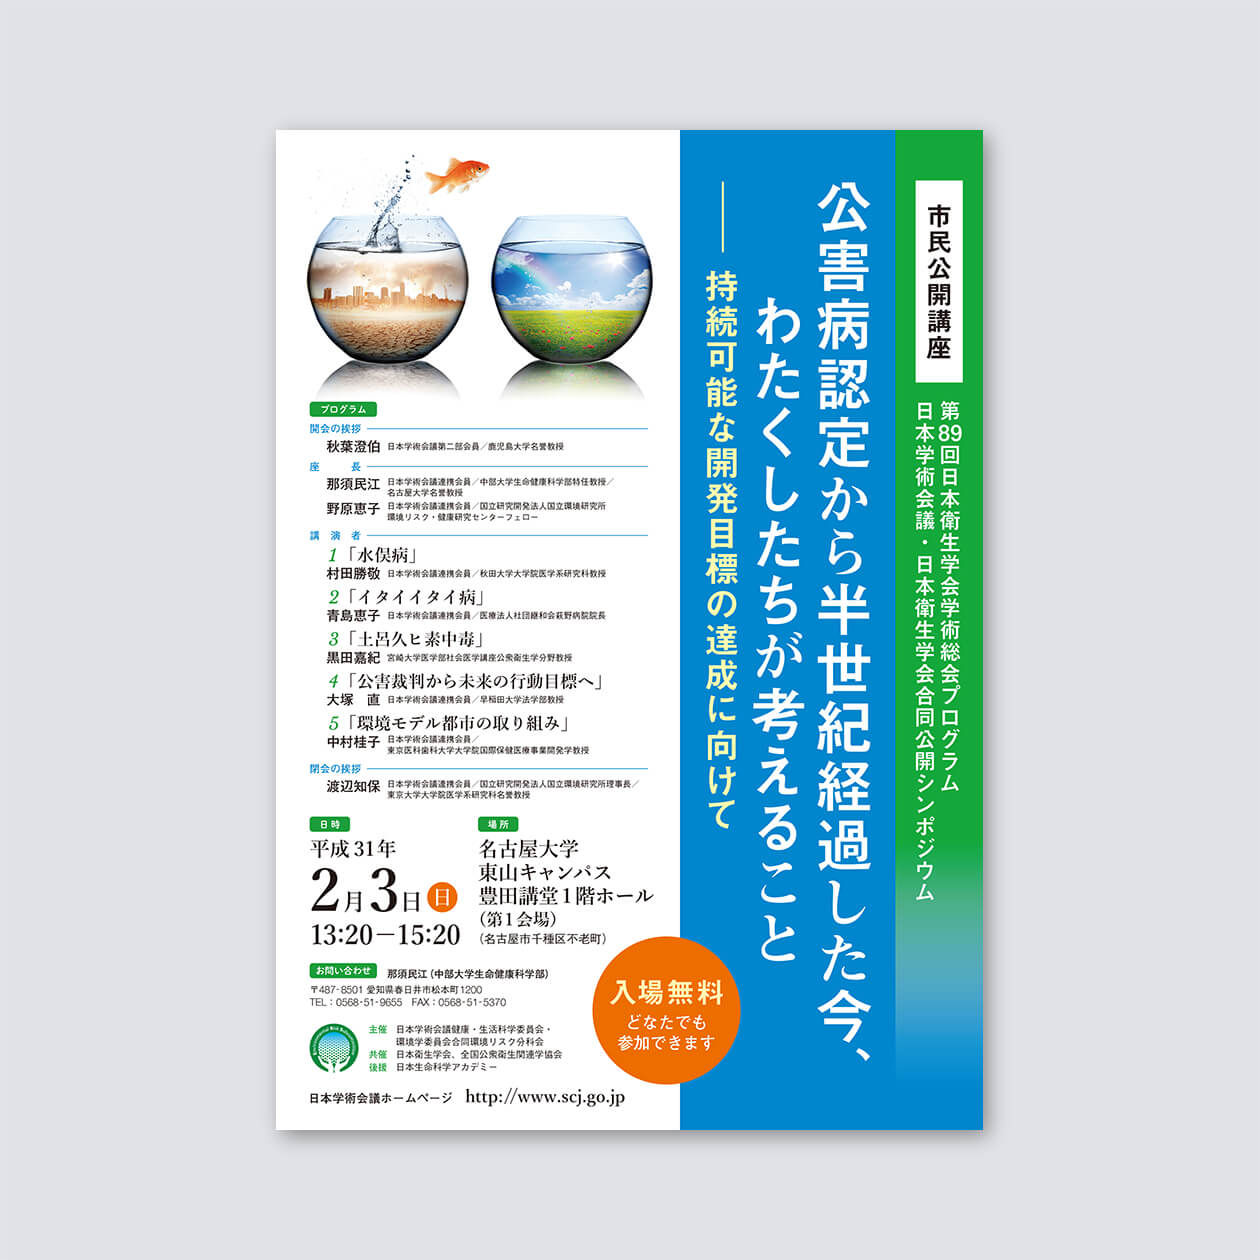 「第89回日本衛生学会学術総会プログラム　日本学術会議・日本衛生学会合同公開シンポジウム」ポスター